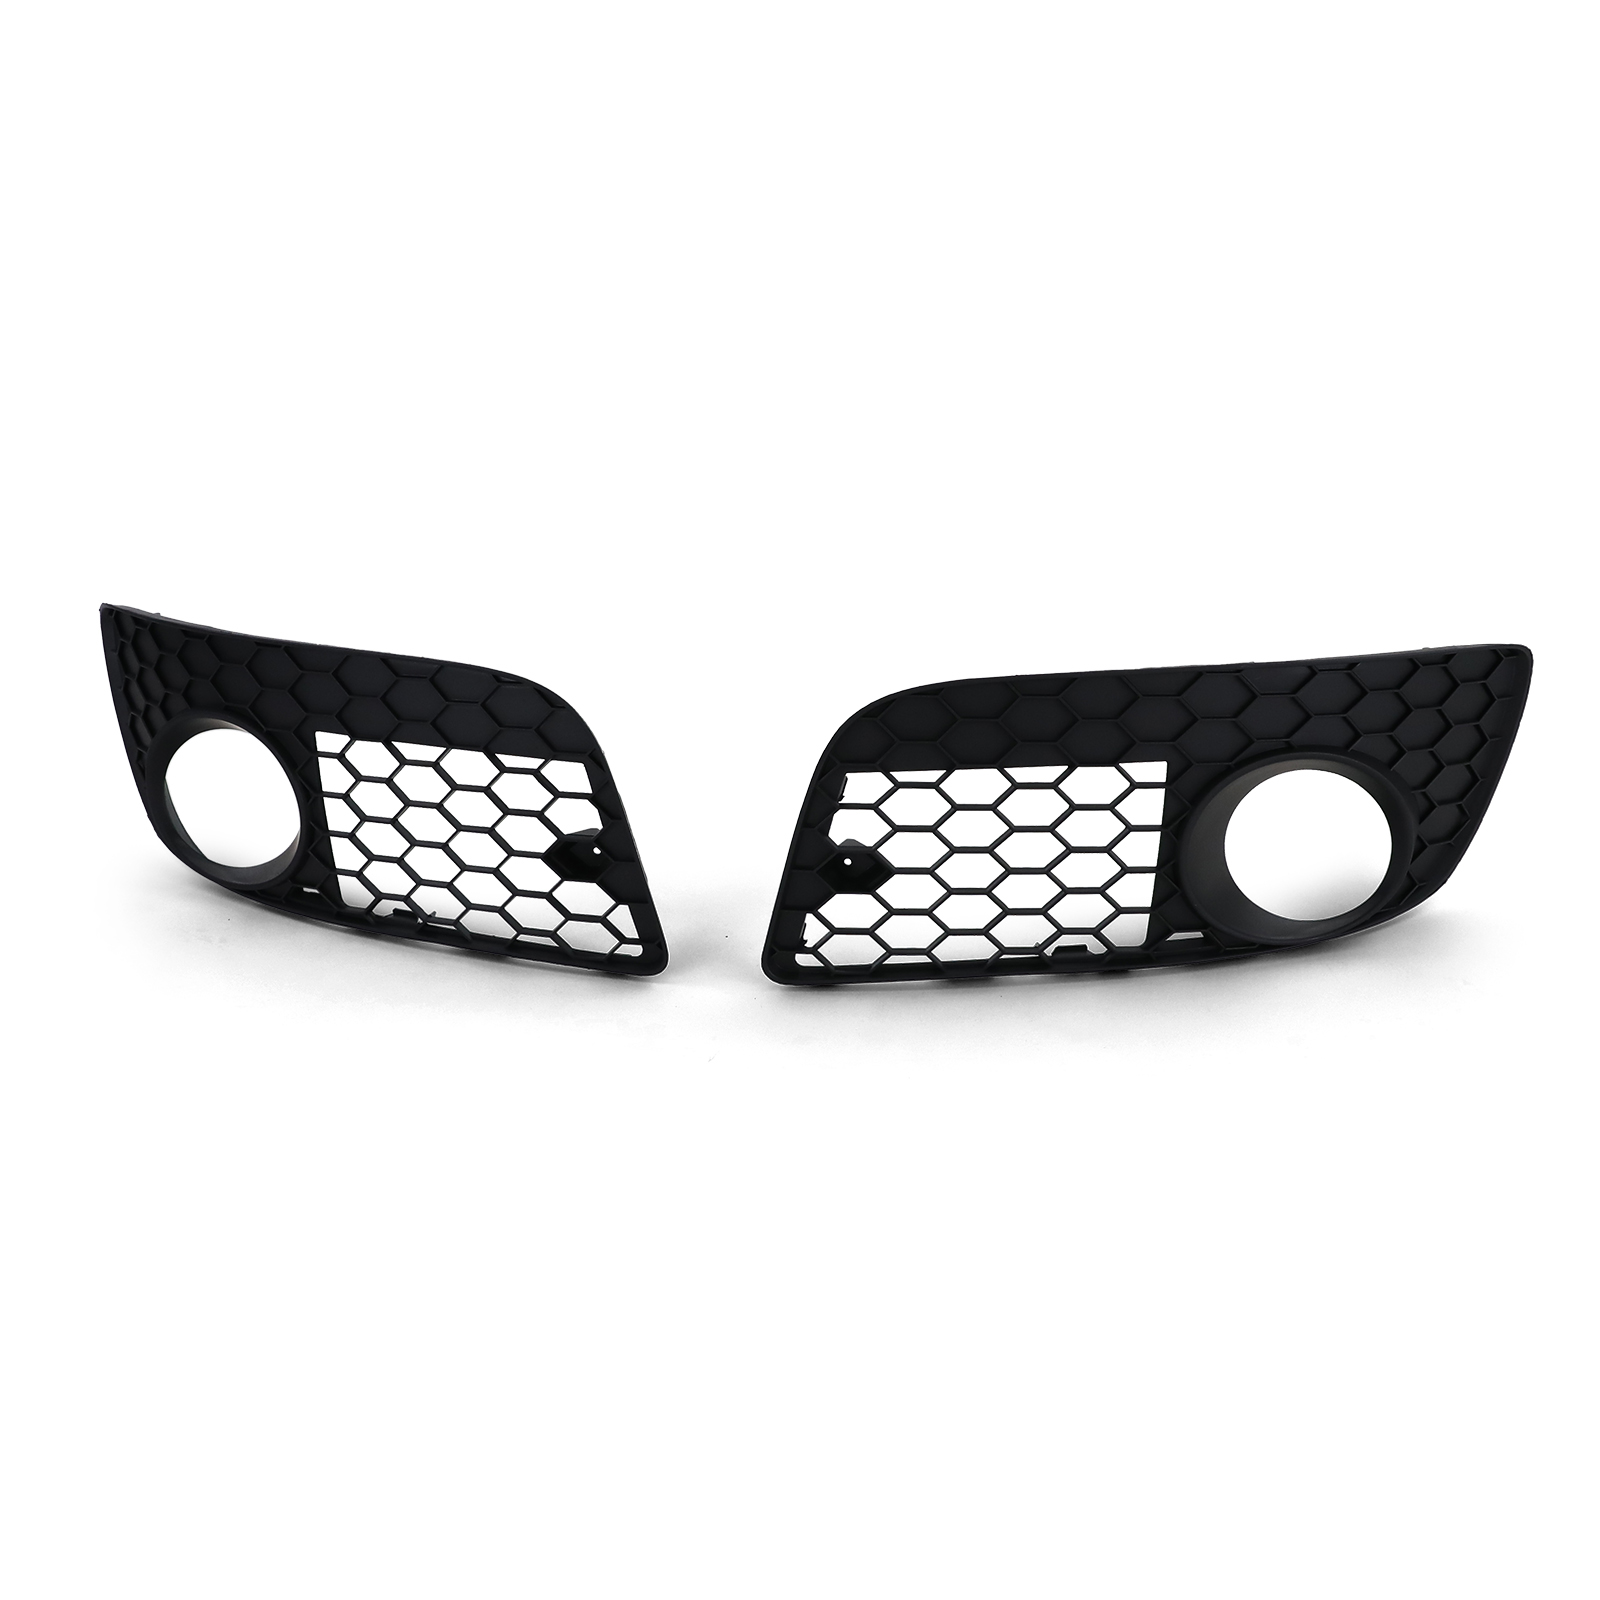 GTI Nebelscheinwerfer Blenden Stoßstange Abdeckungen Gitter für VW Golf 5  03-09 kaufen